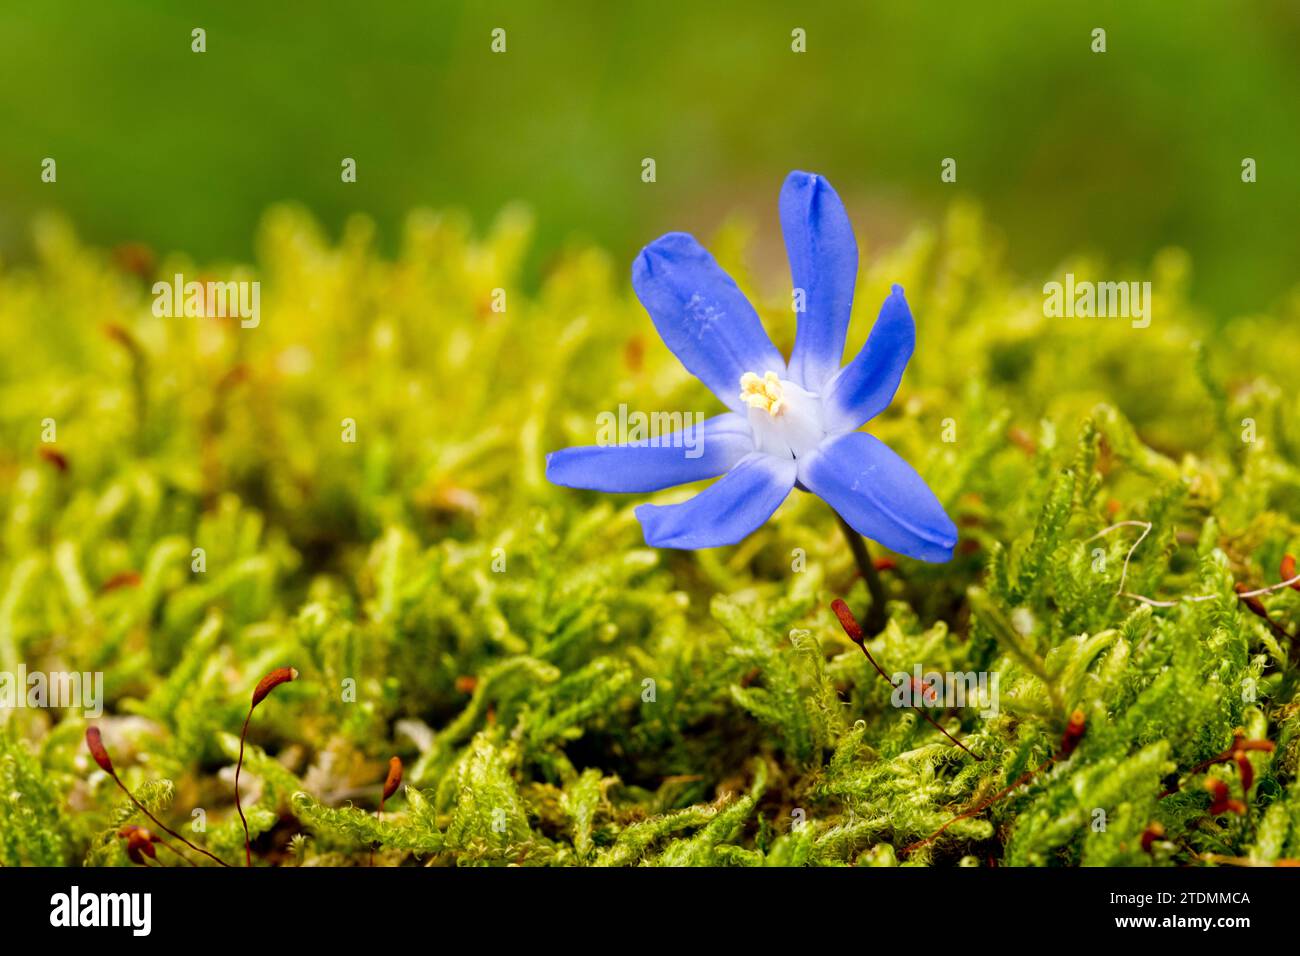 Zweiblättriger Blaustern,Scilla bifolia,Frühblüher,Blumenaufnahme,Natur,Blume,blau,Blüte,Frühling Stock Photo